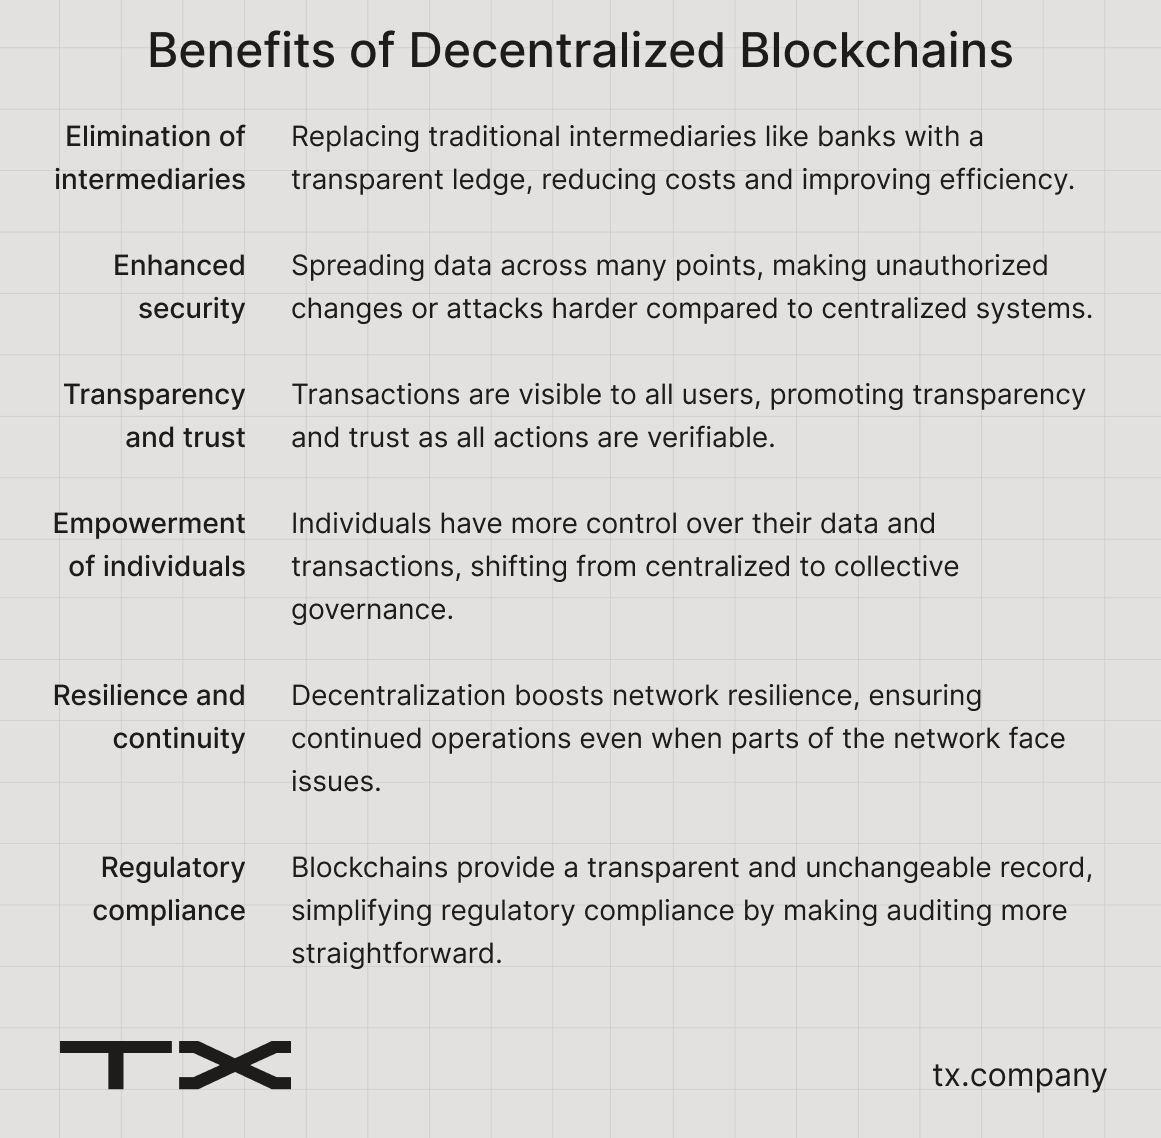 Benefits of decentralization in blockchains.